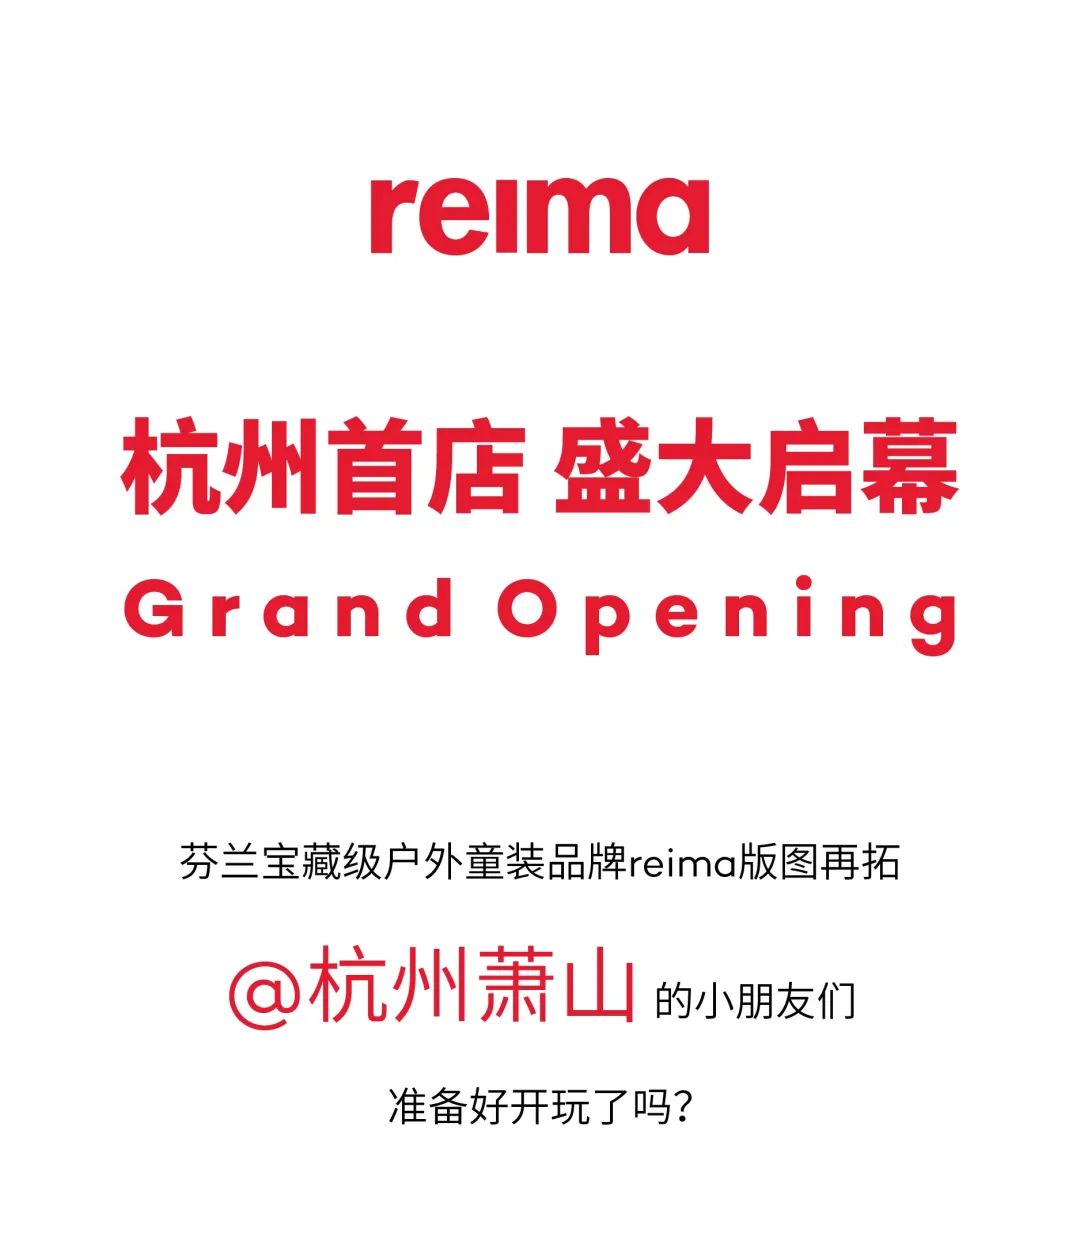 reima杭州萧山汇德隆·银隆百货店隆重揭幕！